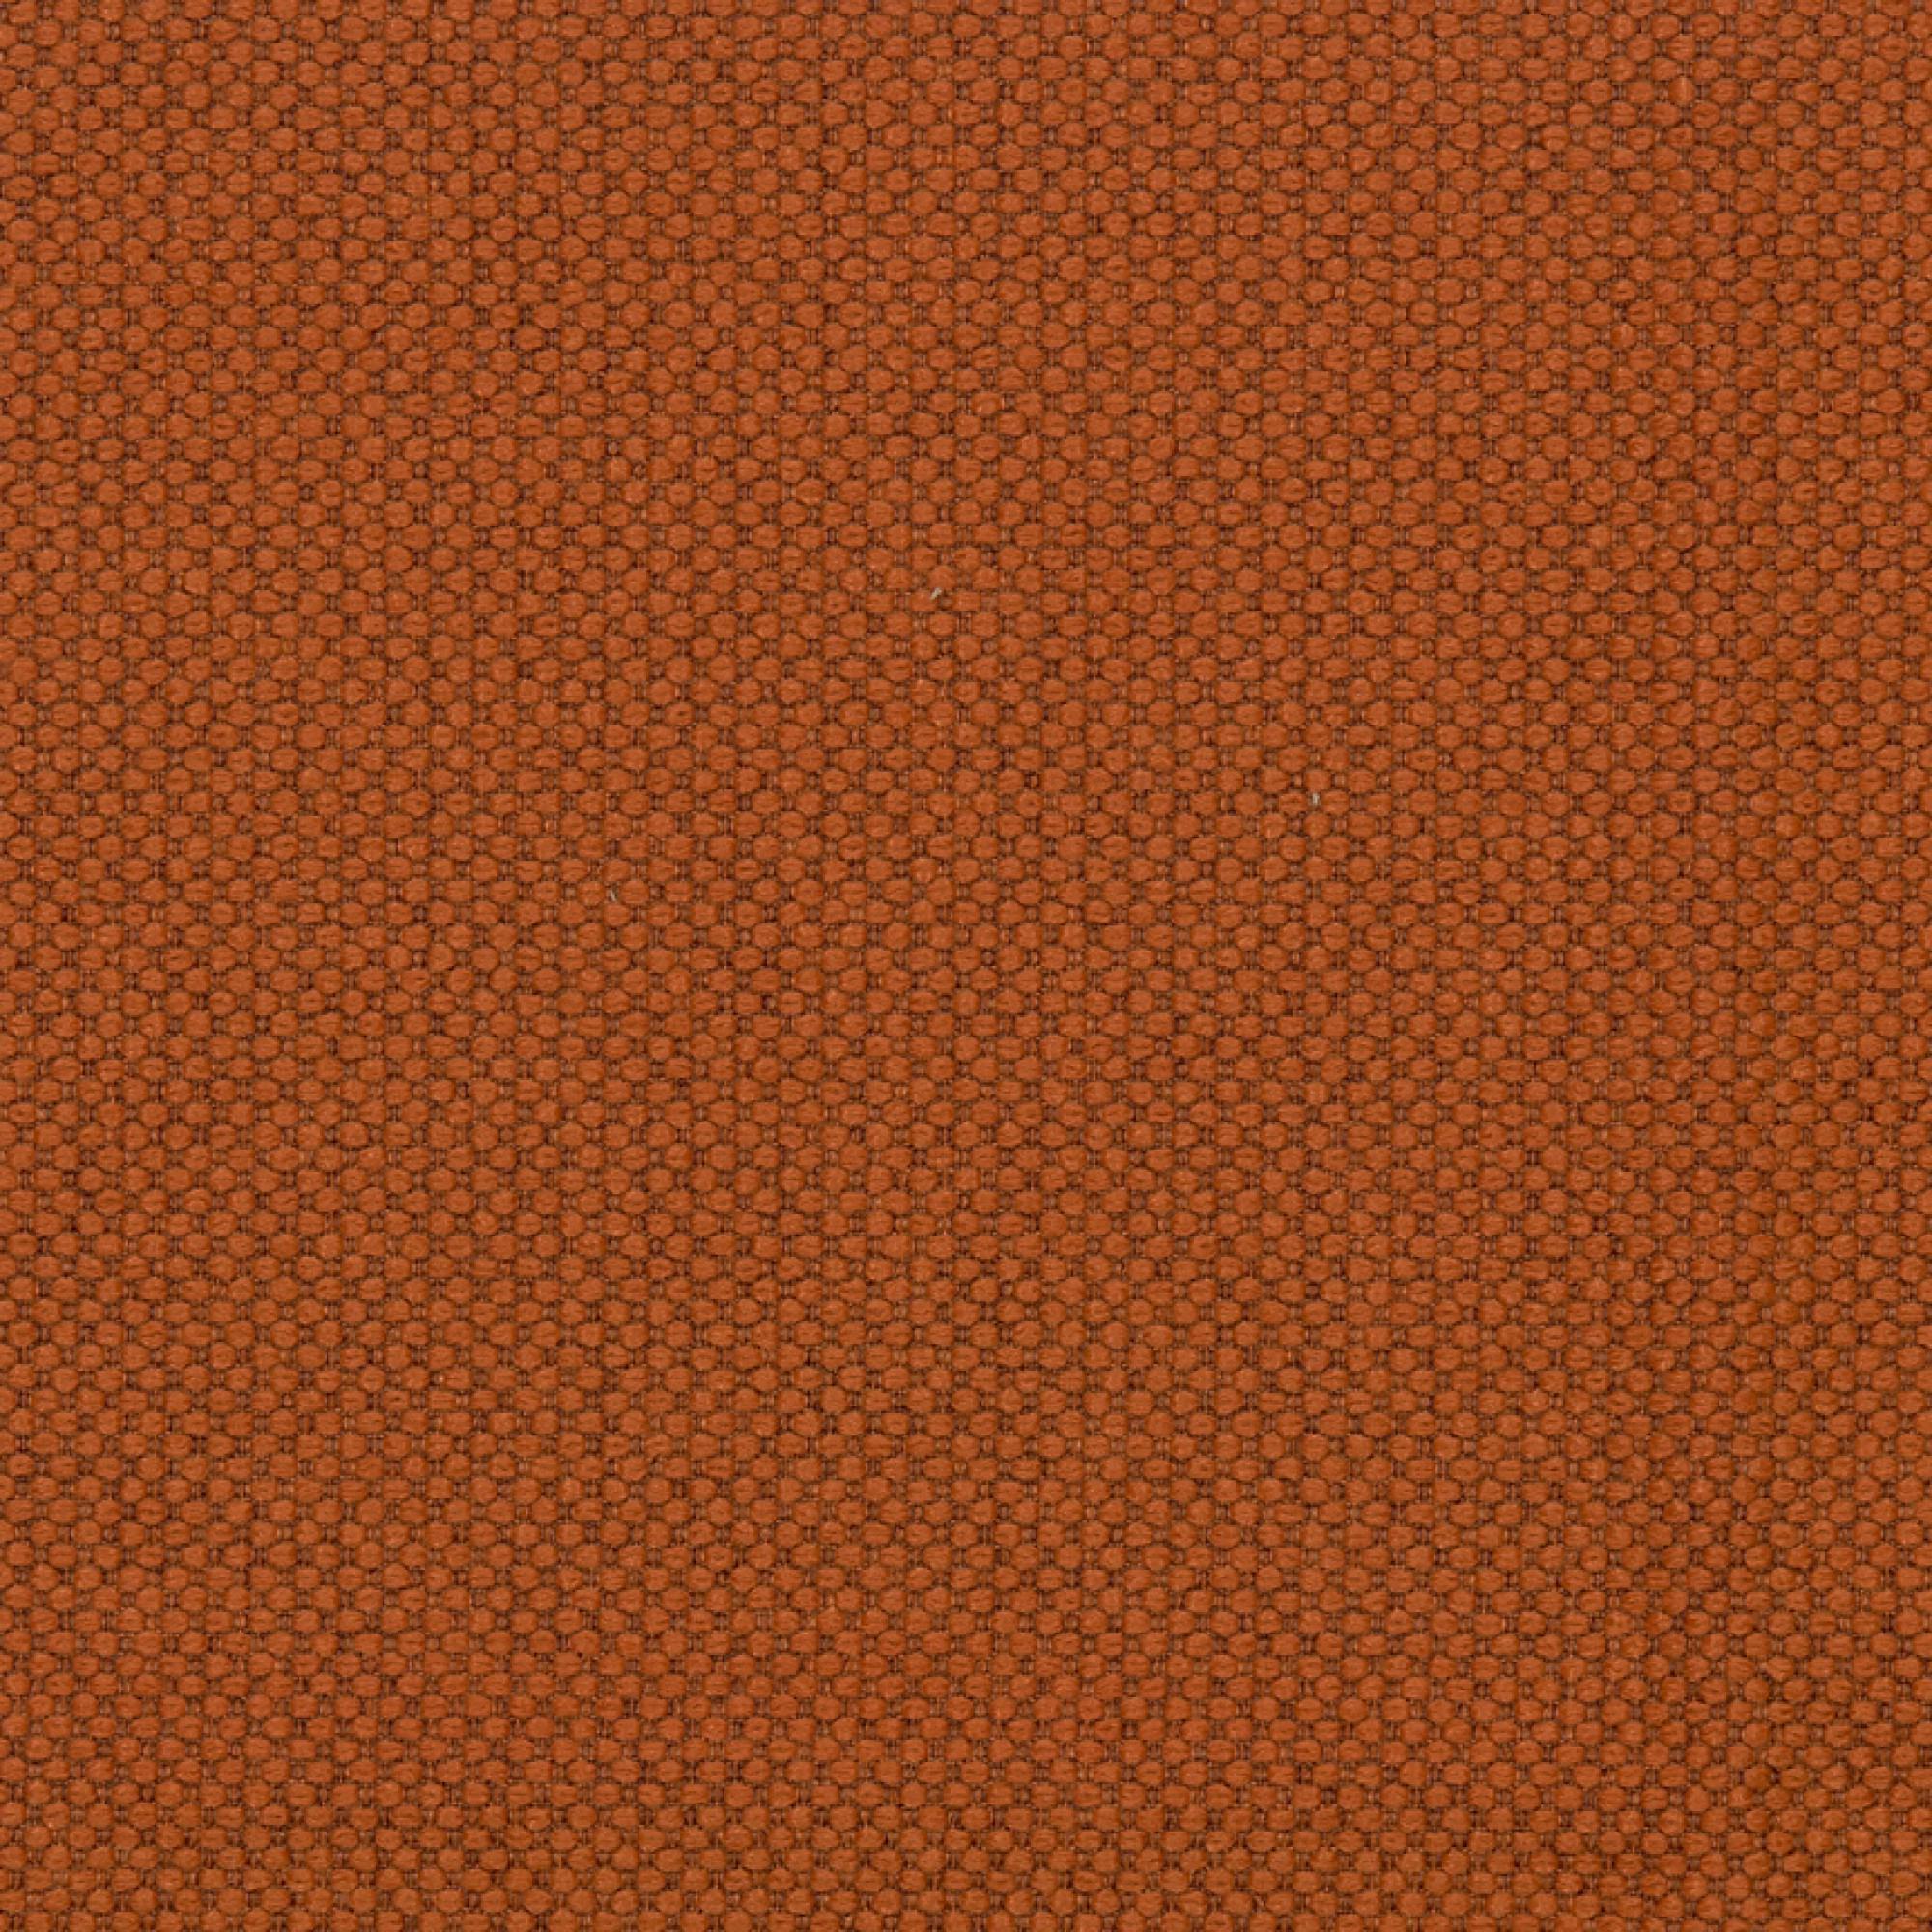 Fabric sample Merit 0032 orange